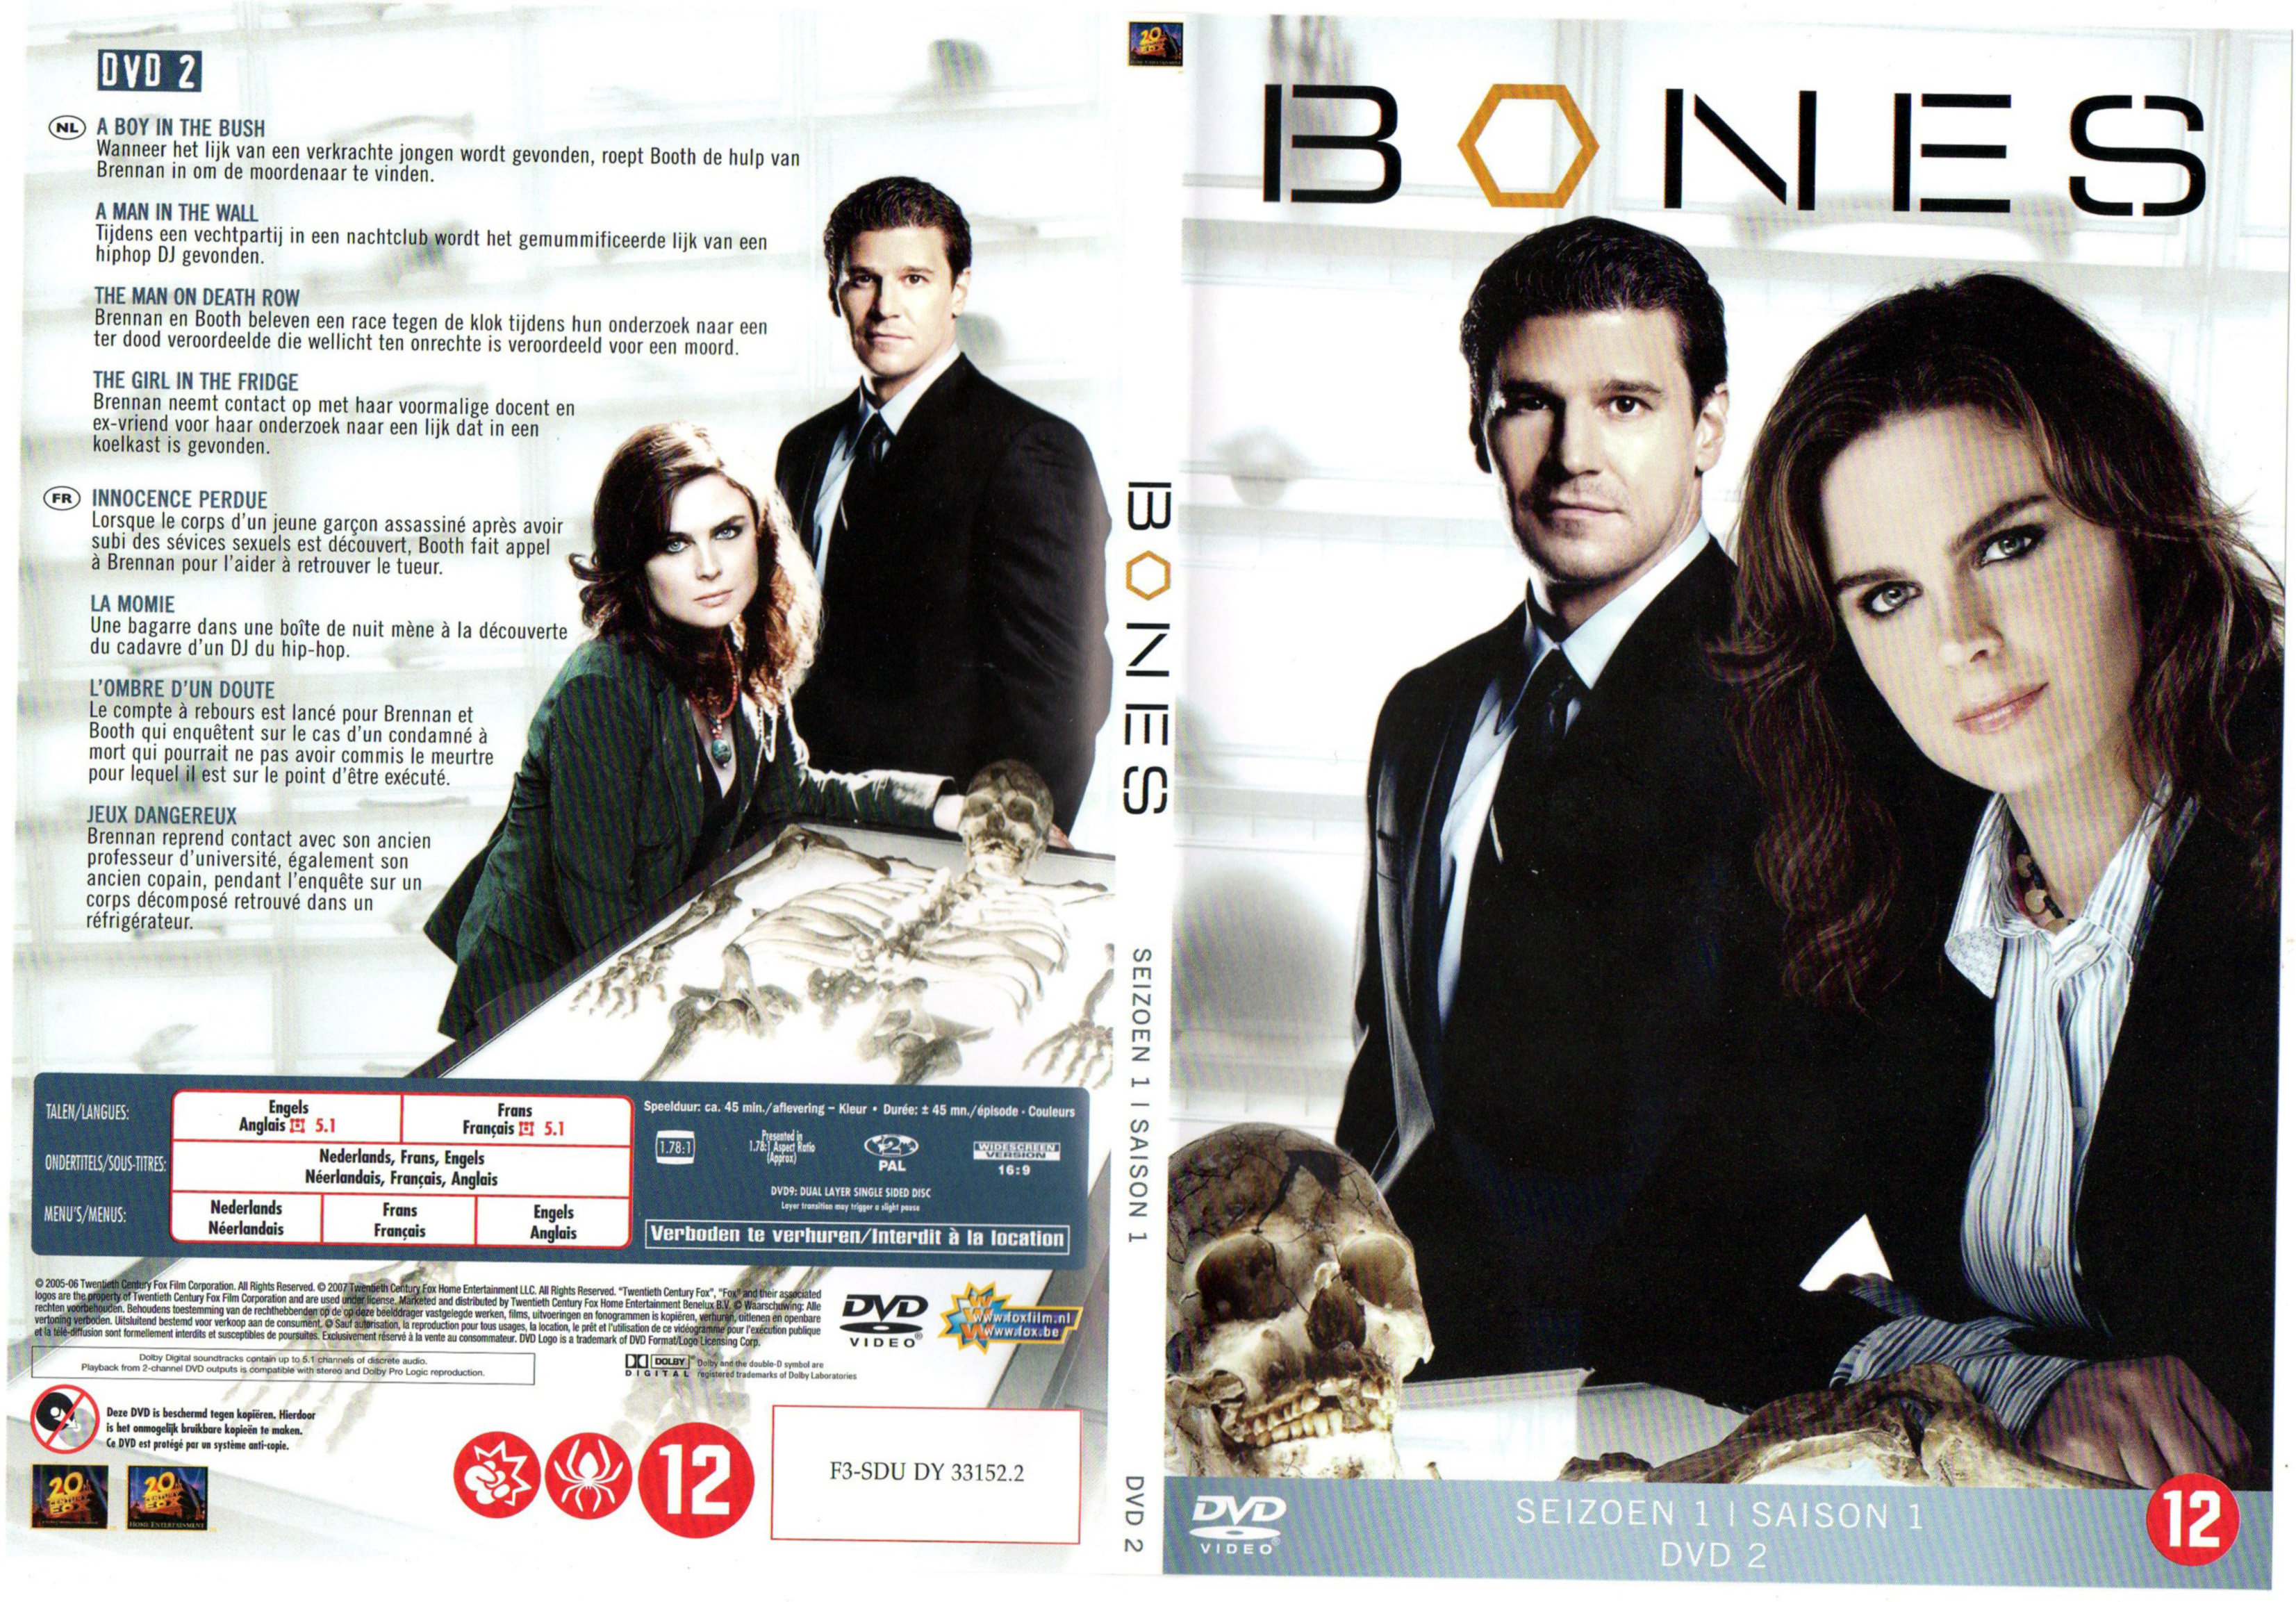 Jaquette DVD Bones Saison 1 DVD 2 v2